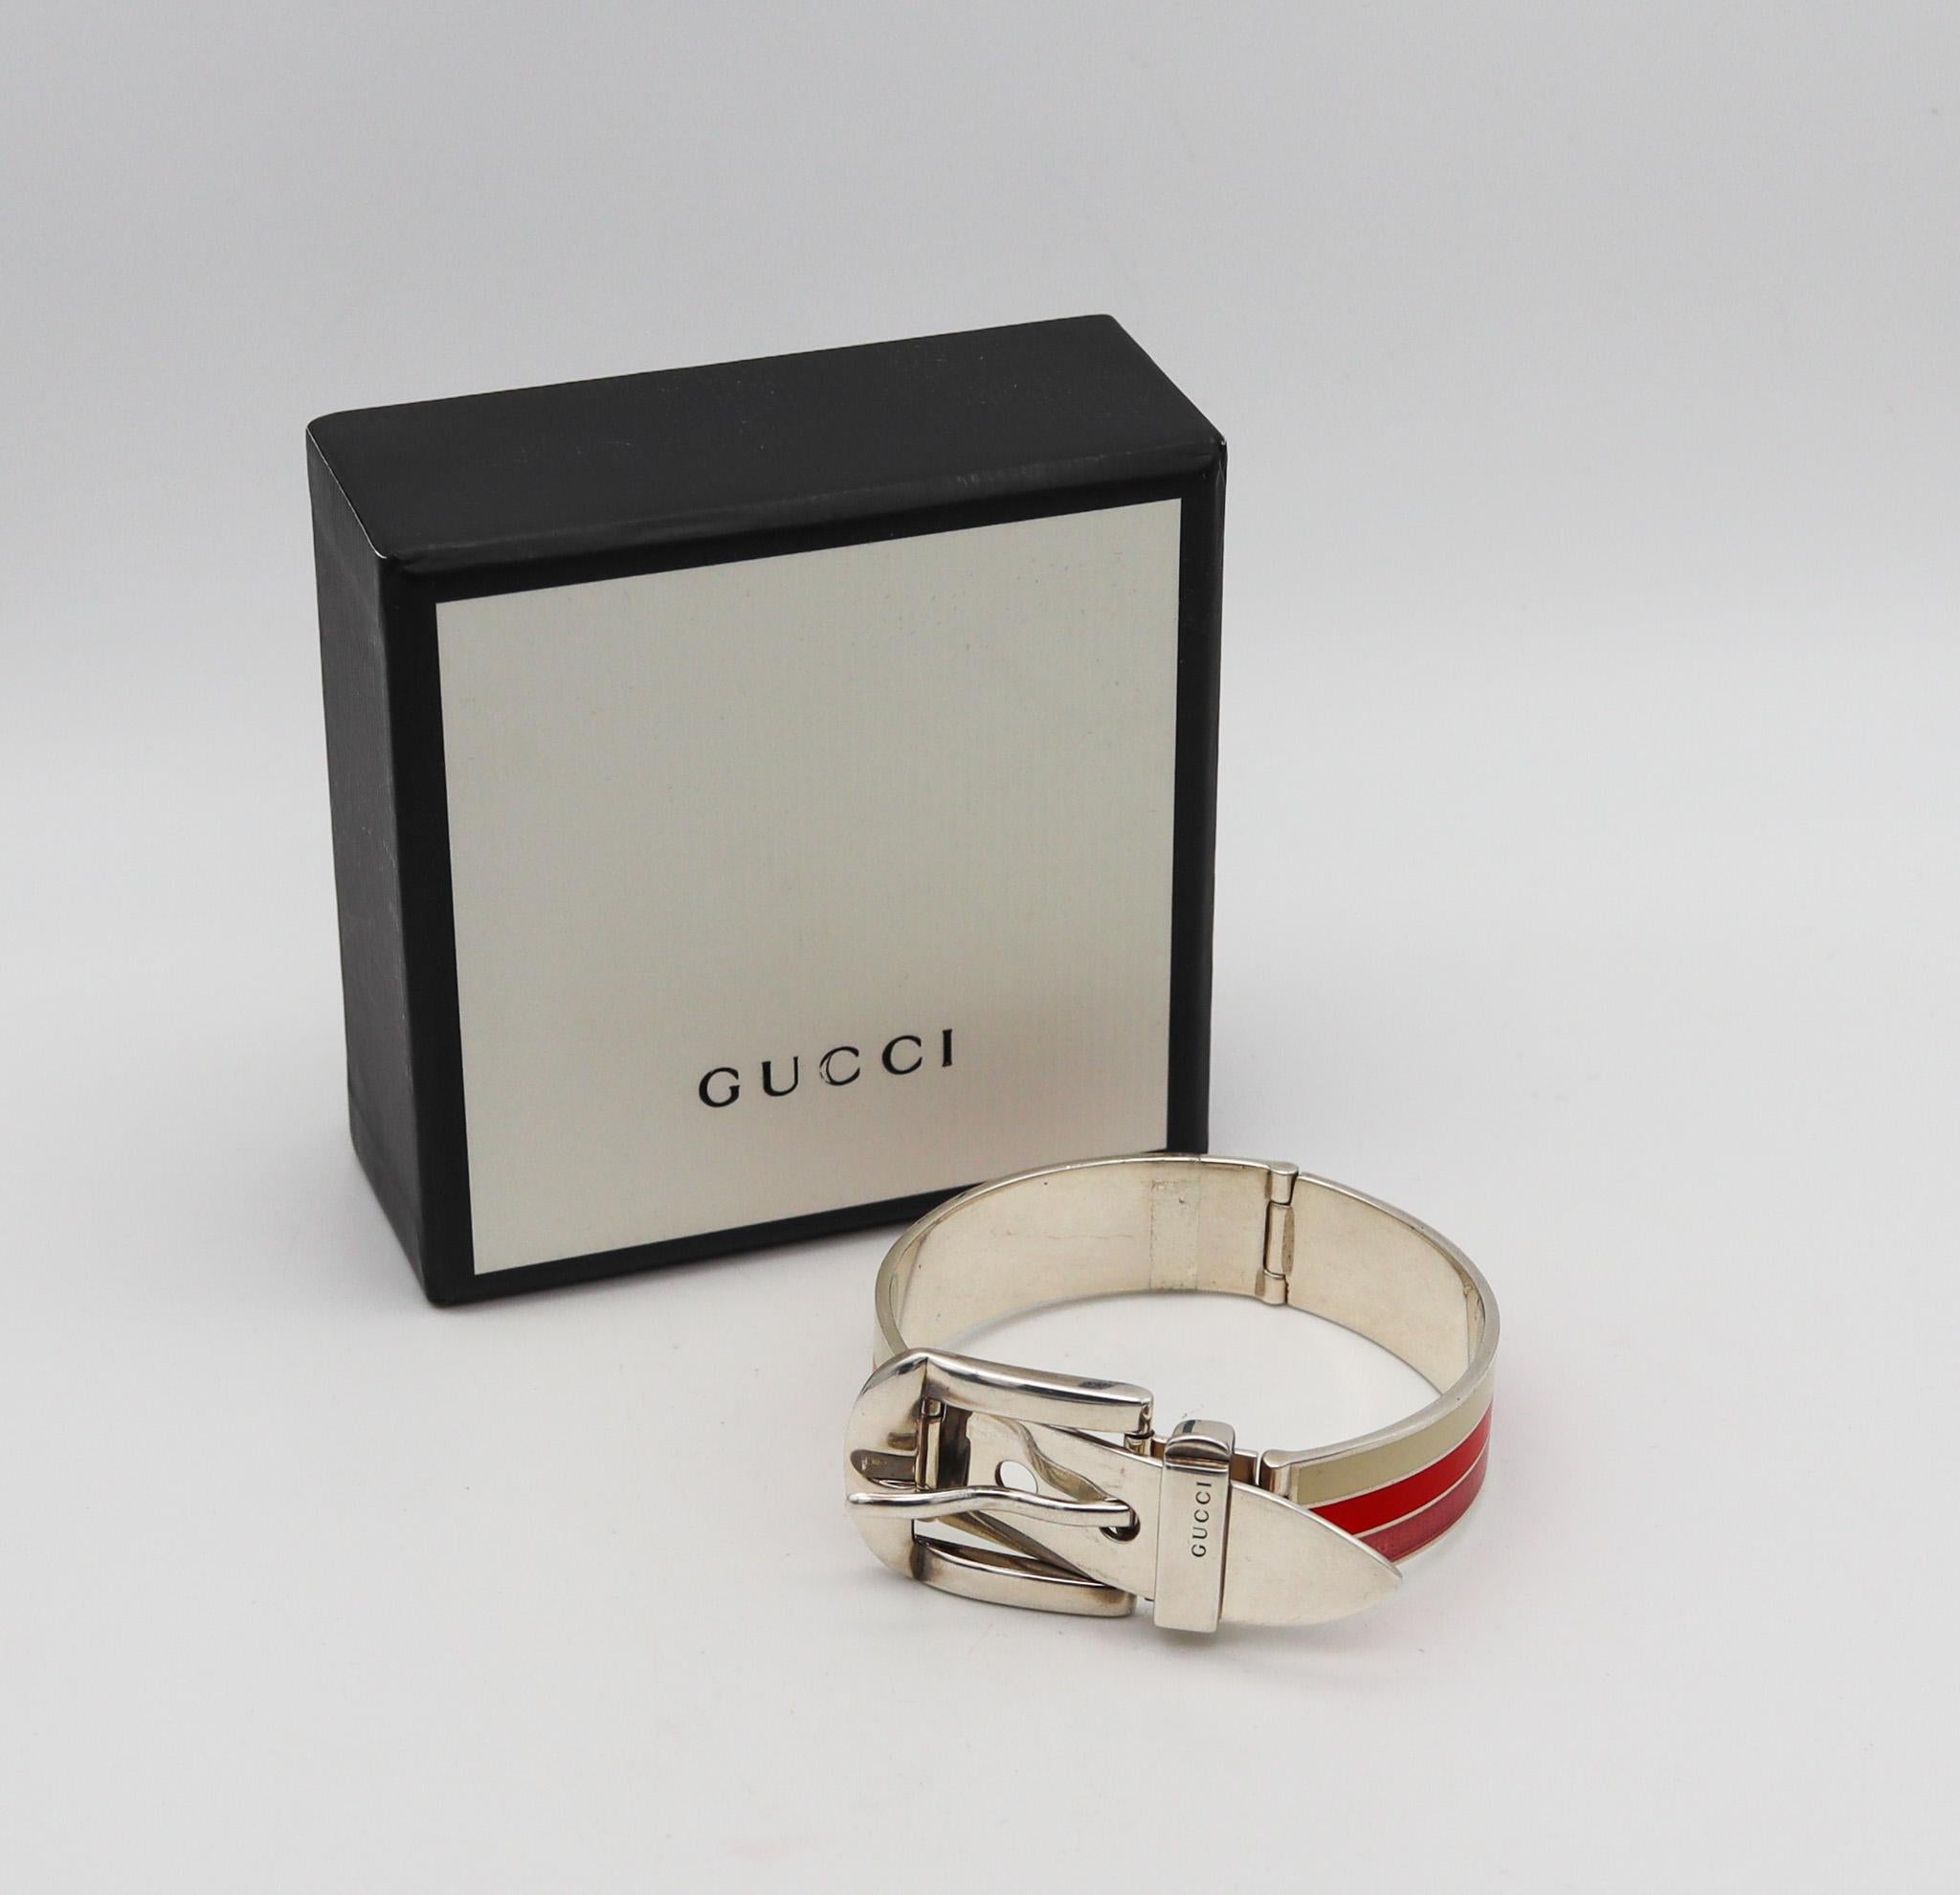 Emailliertes Armband mit Schnalle, entworfen von Gucci.

Ein seltenes Vintage-Armband mit Schnalle, das in Florenz, Italien, vom Modehaus Gucci in den 1980er Jahren entworfen wurde. Dieses ikonische Armband wurde in Form einer Gürtelschnalle aus